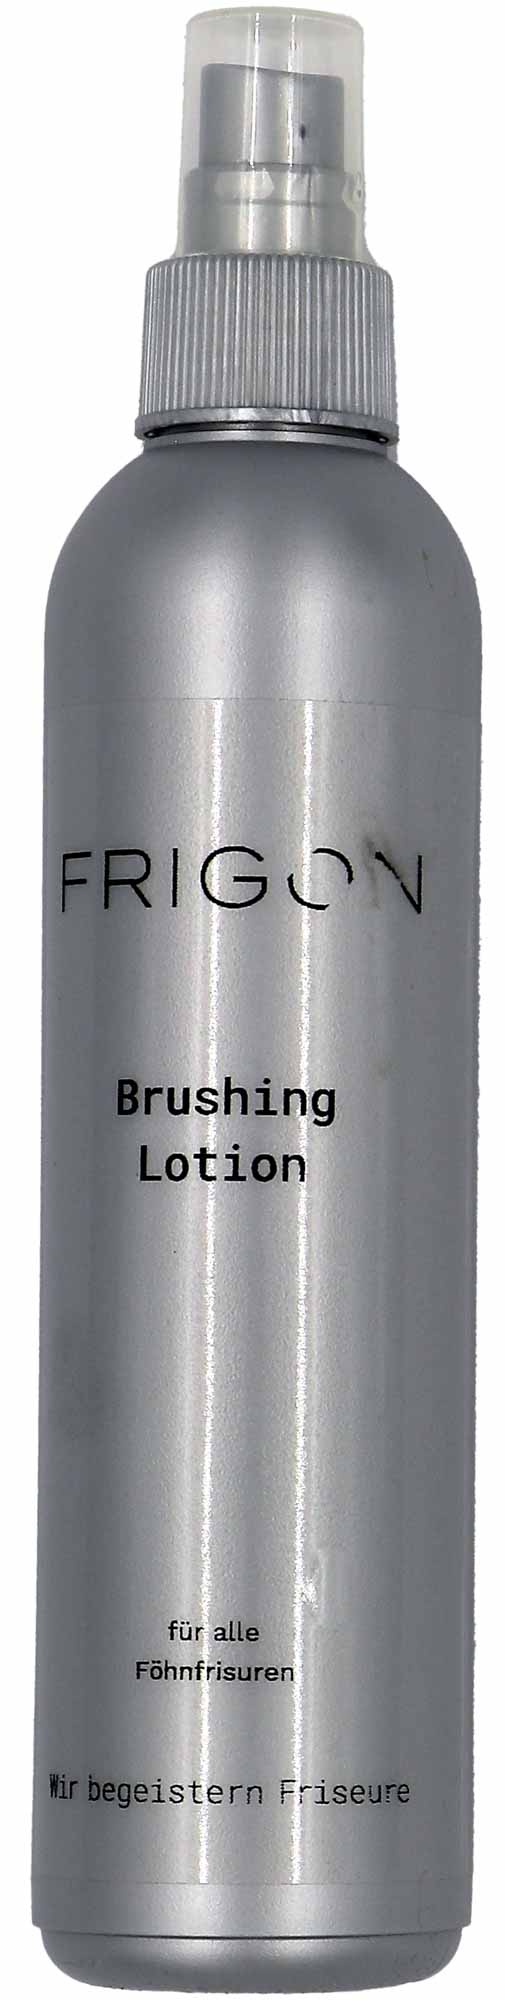 Frigon Brushing Lotion 250ml